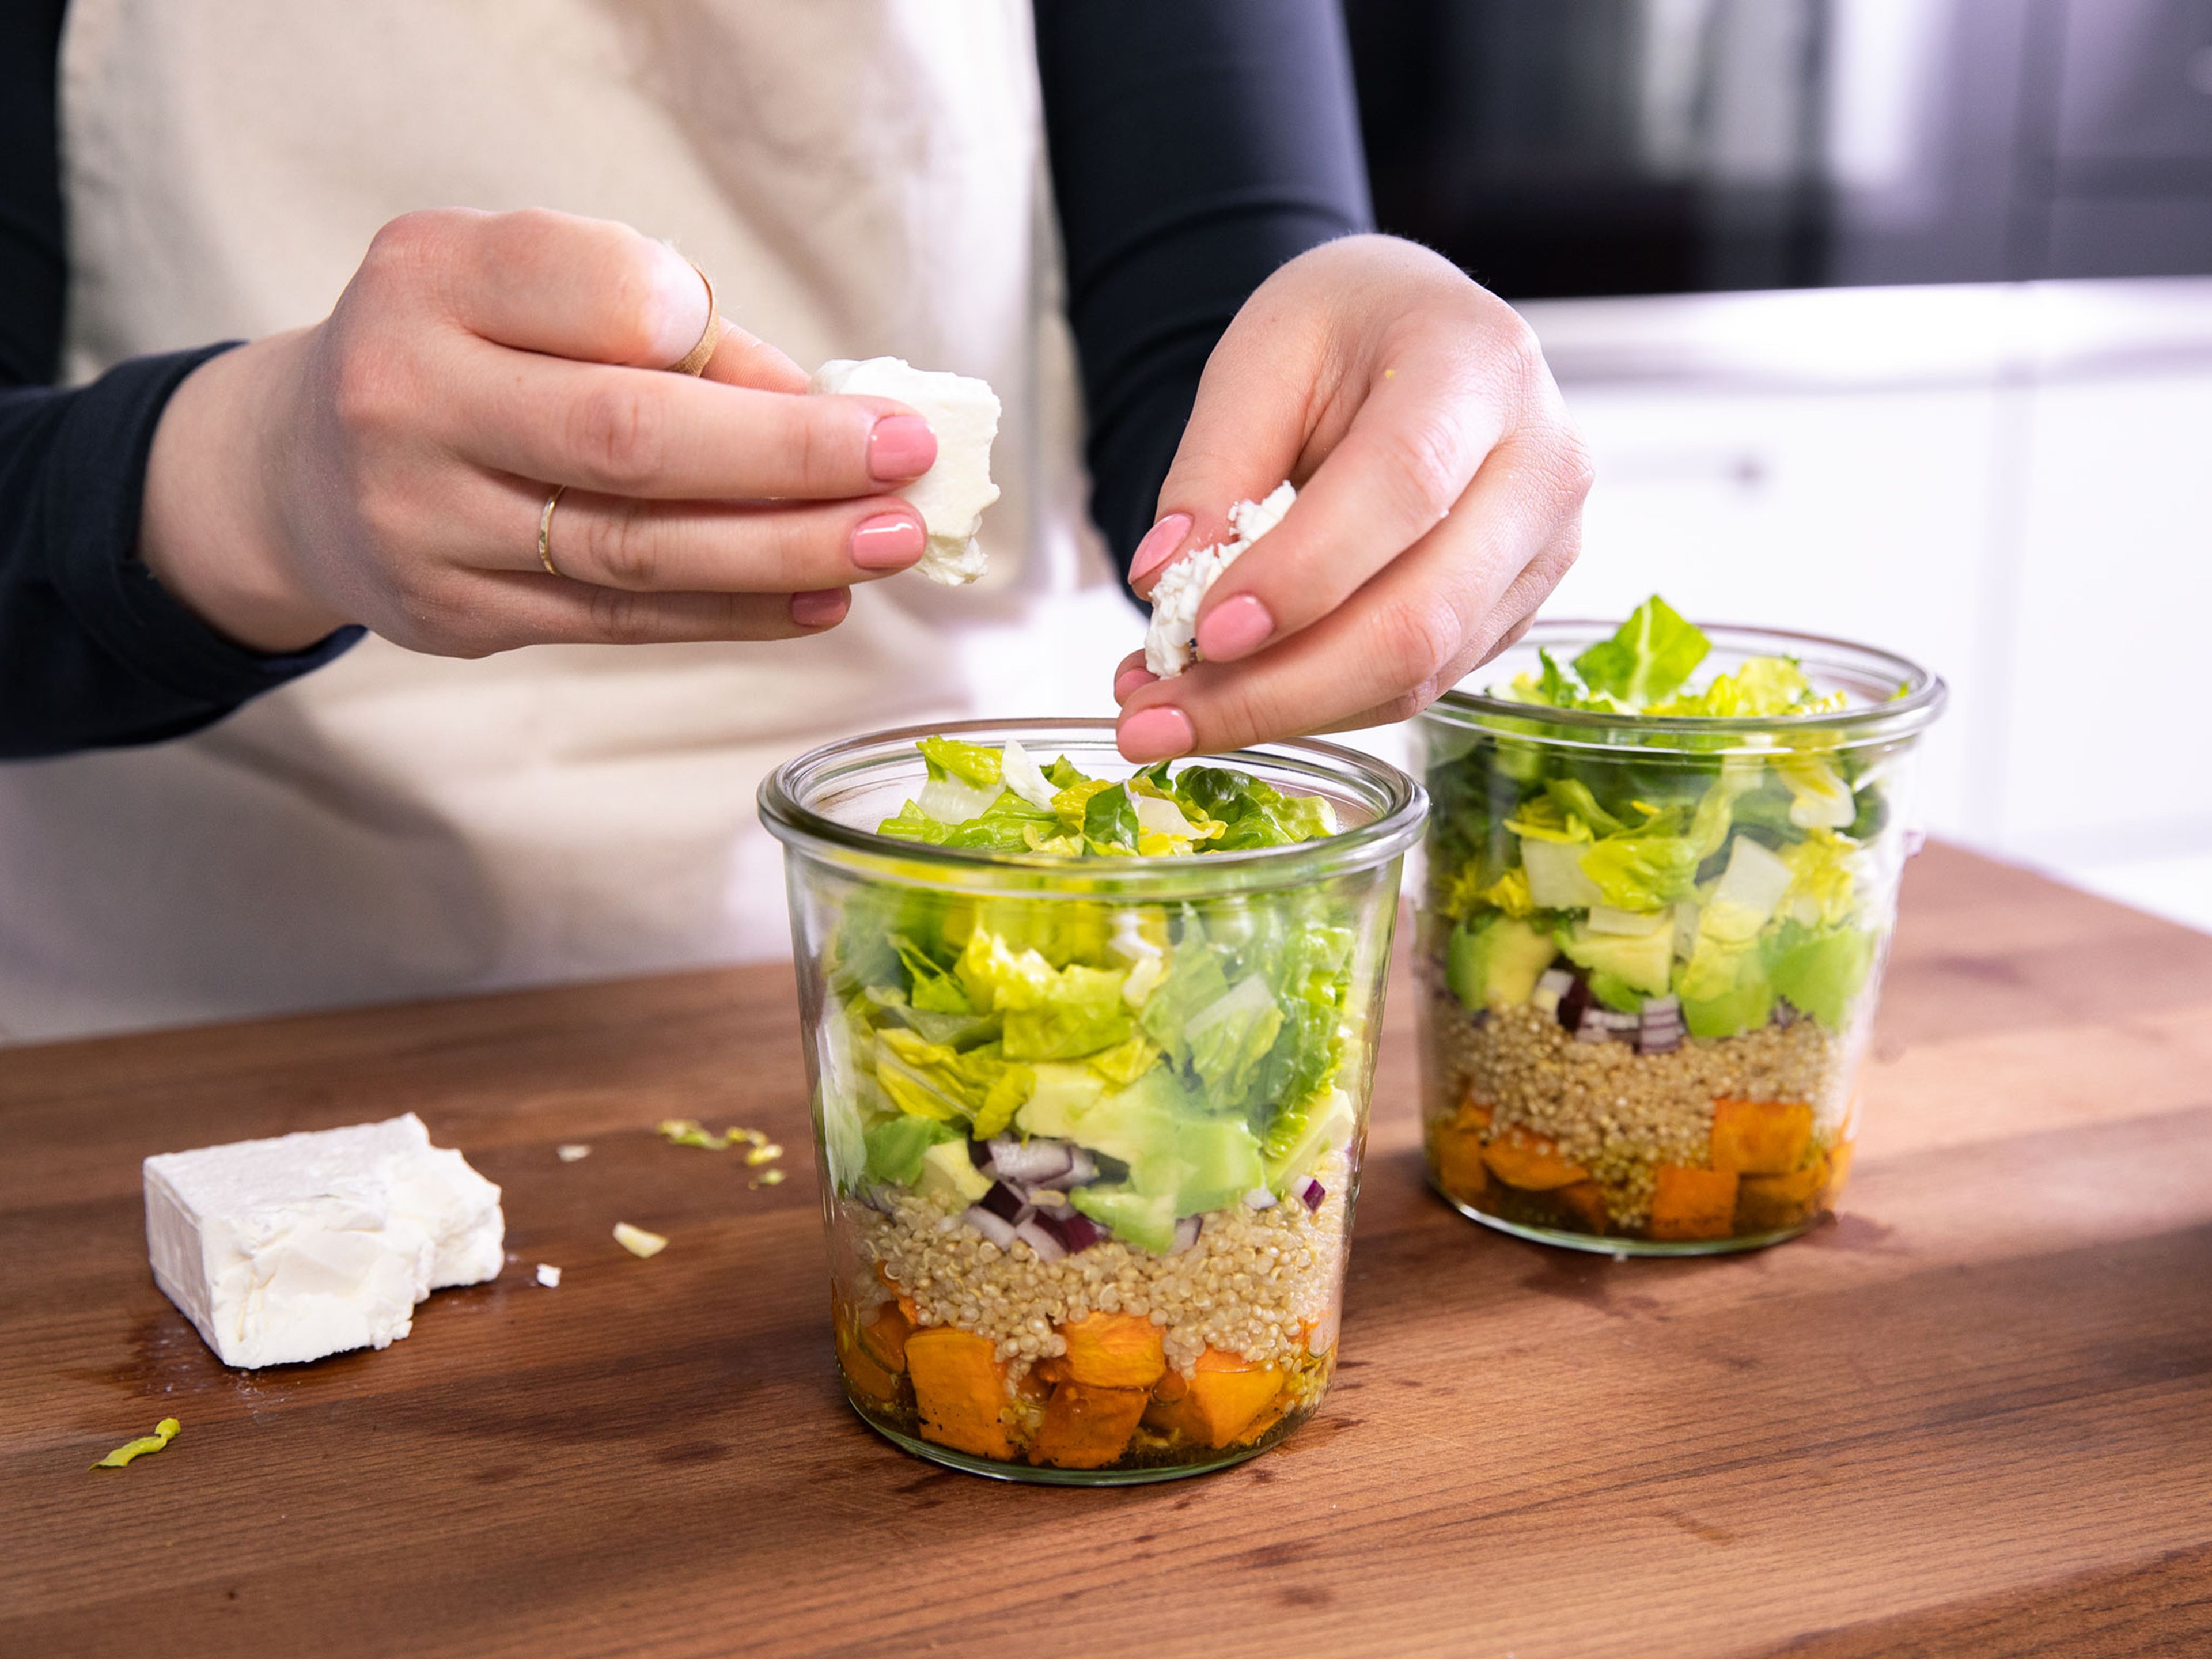 Um den Salat zu schichten, zuerst das Dressing gleichmäßig auf die Gläser aufteilen. Danach Süßkartoffel, Quinoa, roter Zwiebel, Avocado und Romanasalat darüber schichten. Zum Schluss Fetakäse mit den Händen zerbröseln und mit den gerösteten Sonnenblumenkernen auf dem Salat verteilen. Sofort genießen oder 1 - 2 Tage verschlossen im Kühlschrank lagern. Guten Appetit!